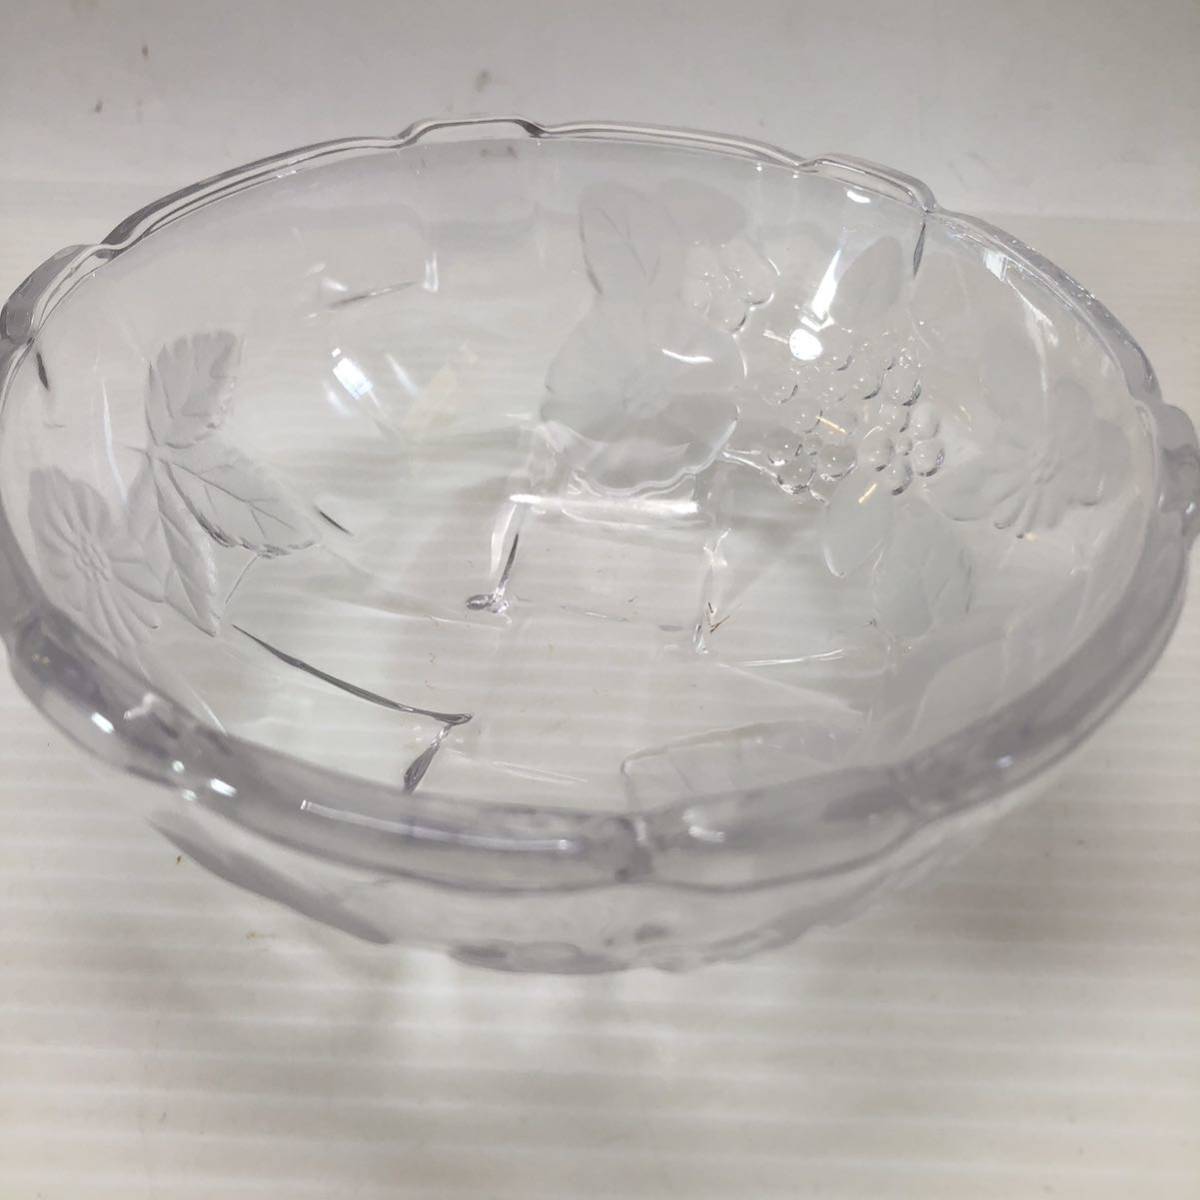 SOGA GLASS 曽我ガラス SNOW FLOWER サラダボウル デザートボウル ガラス食器 ガラス皿 器 5個 洋食器 昭和レトロ 未使用箱付の画像4